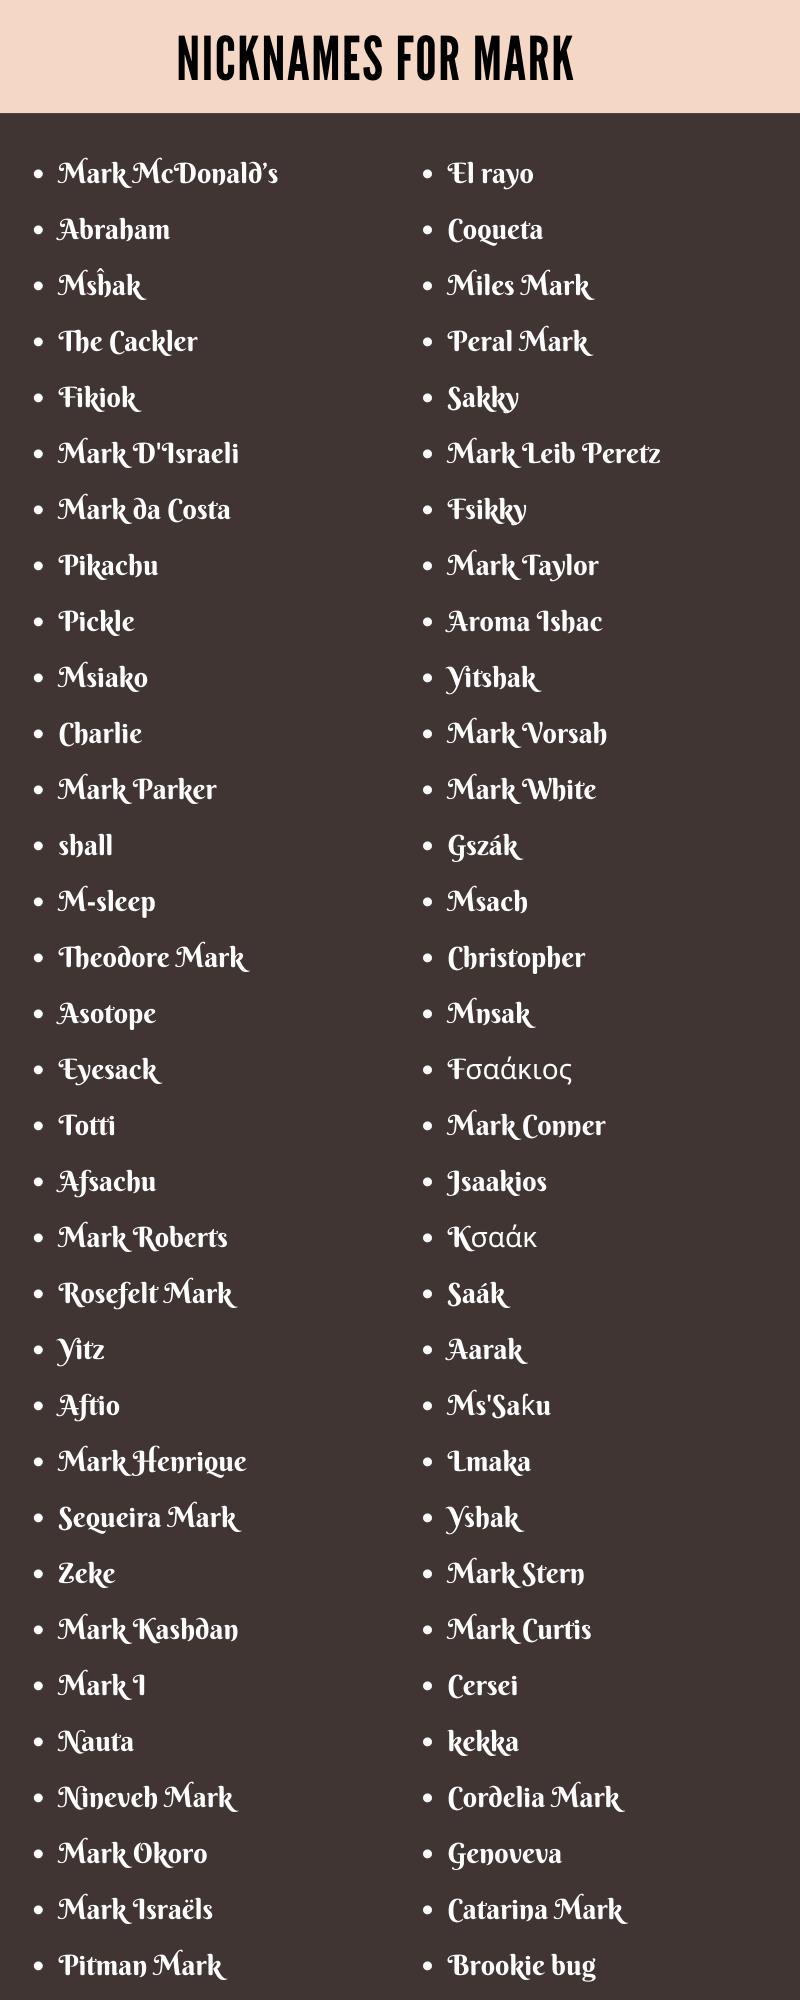 Nicknames For Mark